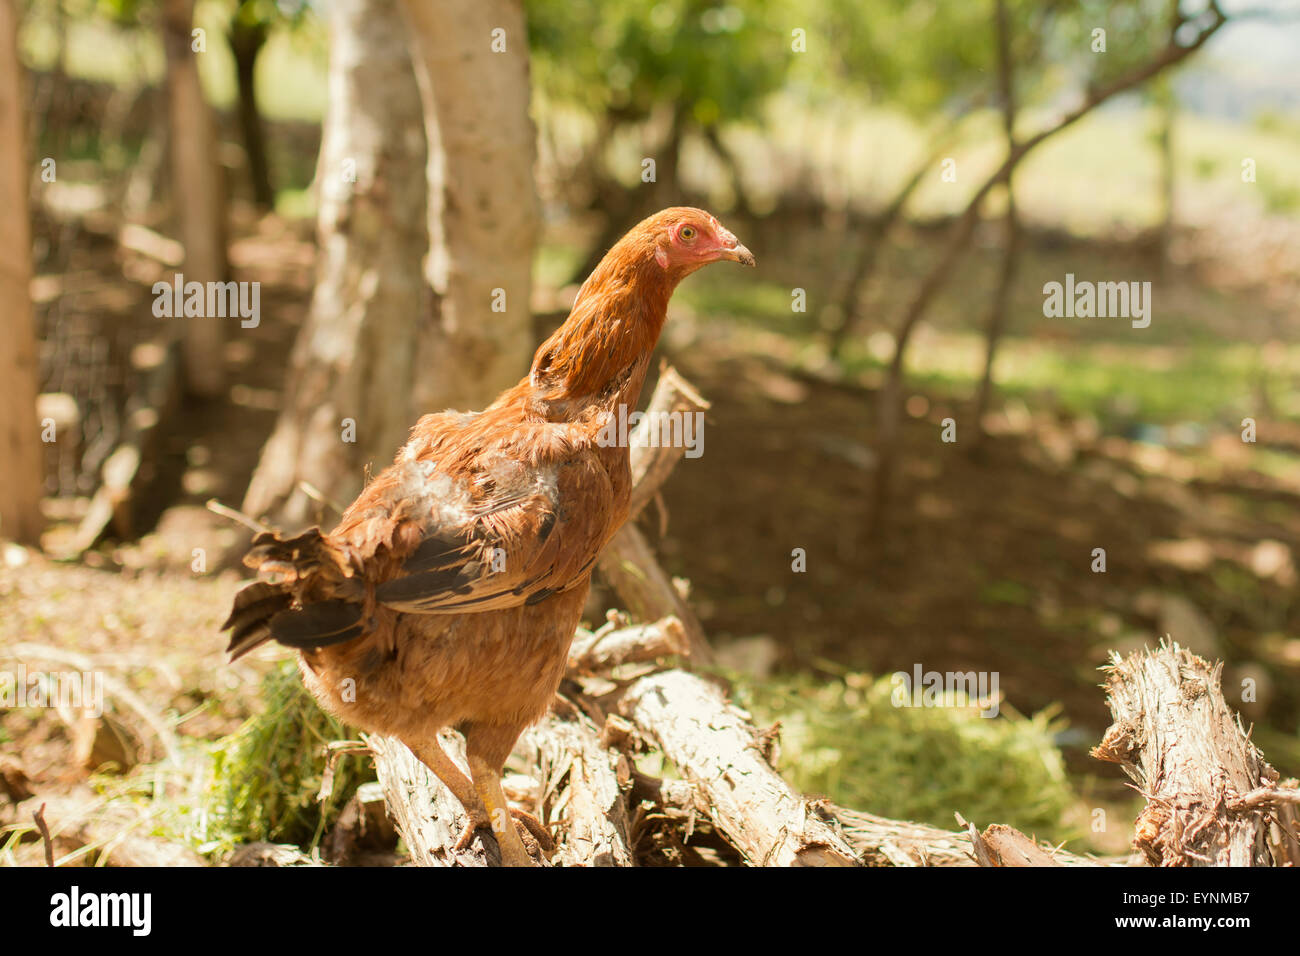 Imagen de gallina marrón en el jardín, Foto de stock